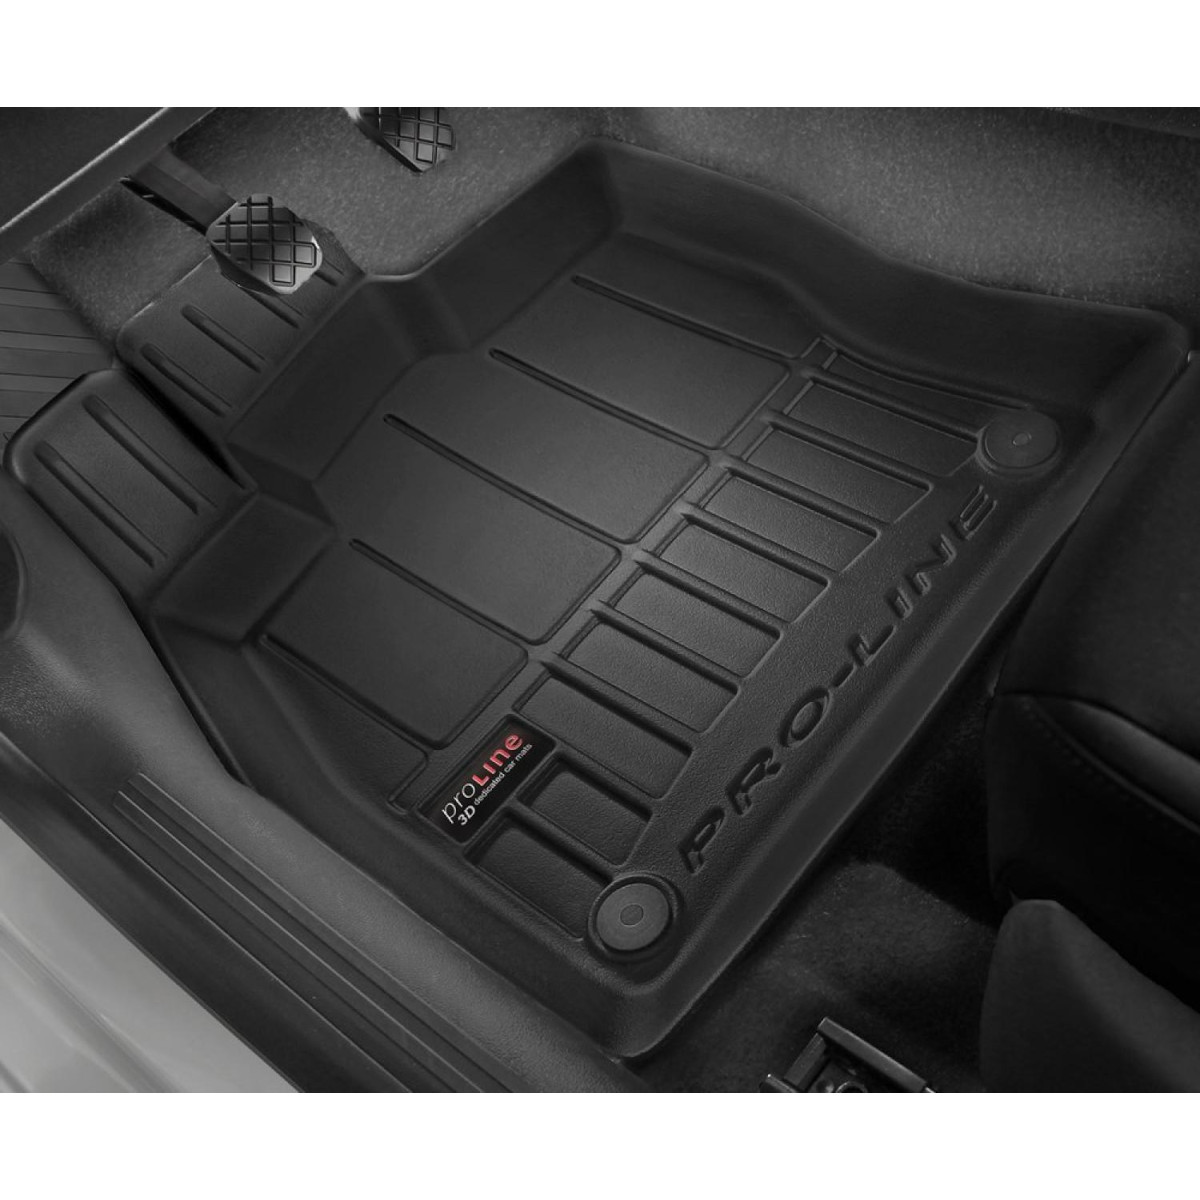 Guminiai kilimėliai Proline Fiat 500 nuo 2015m. / Facelift / paaukštintais kraštais